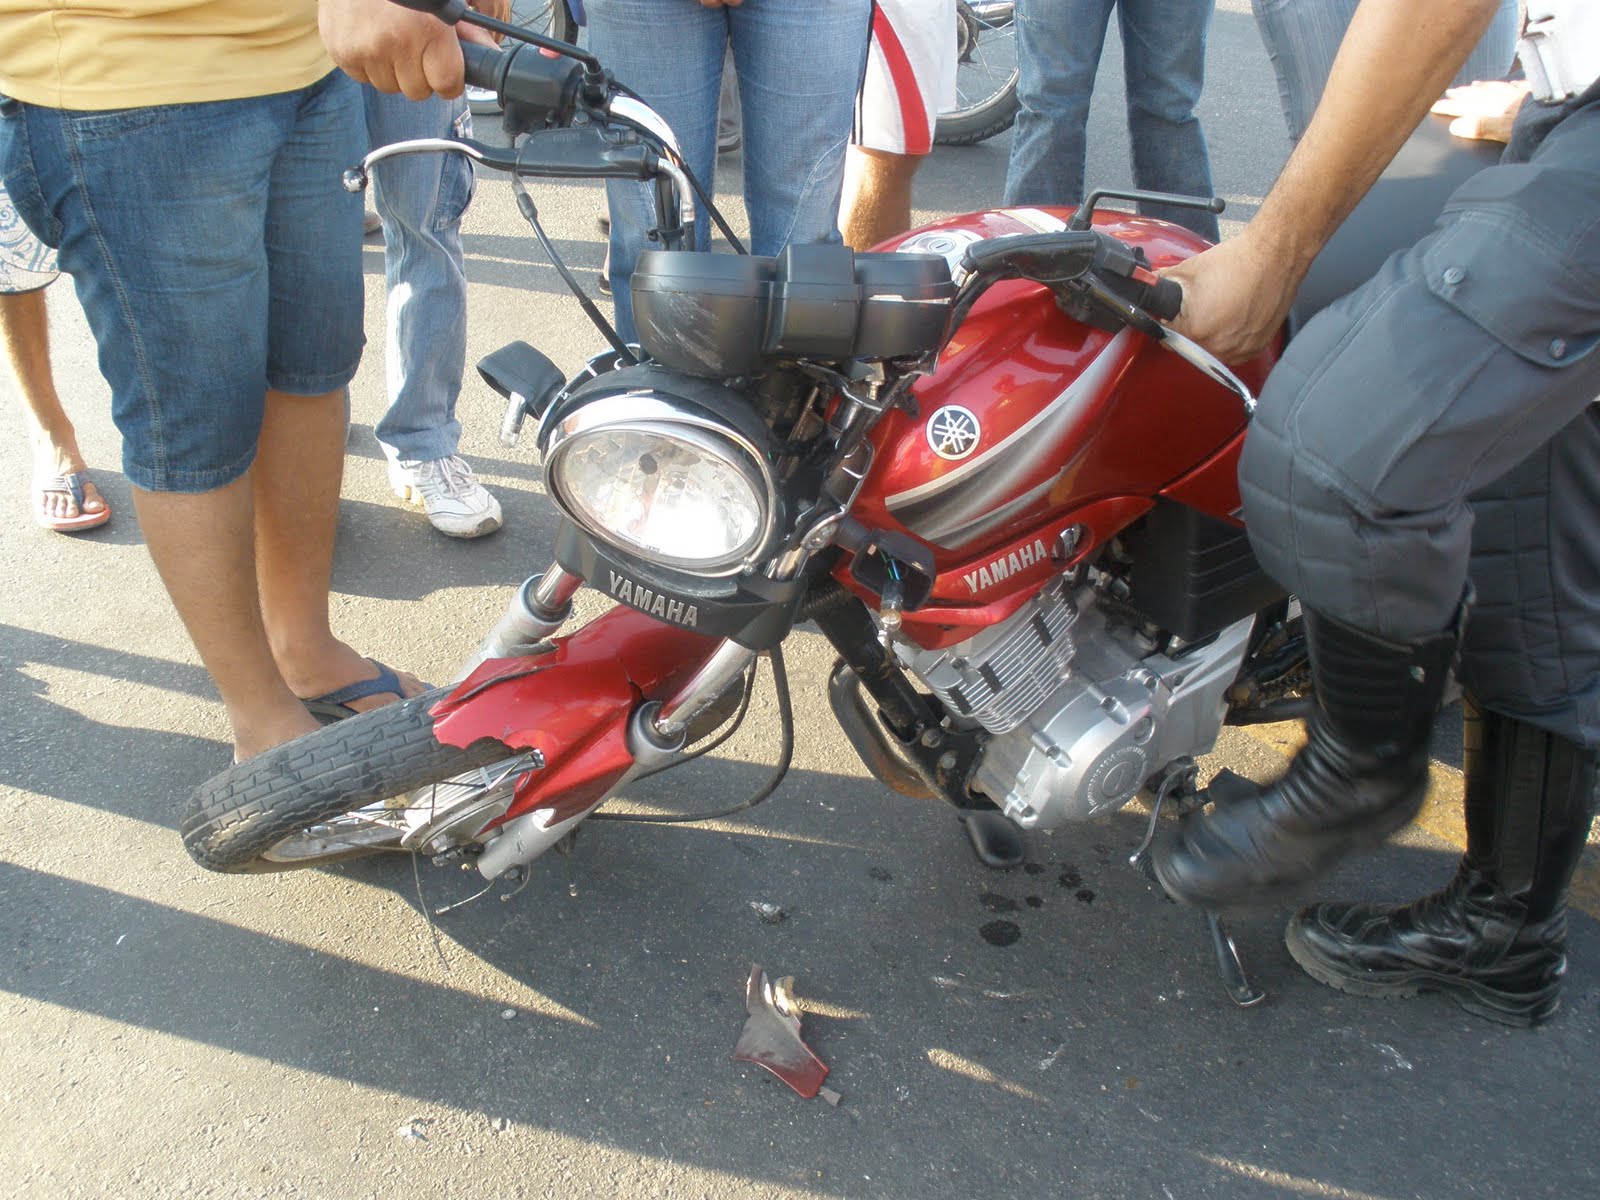  O custo com internações por causa de acidentes com moto triplicou no Paraná